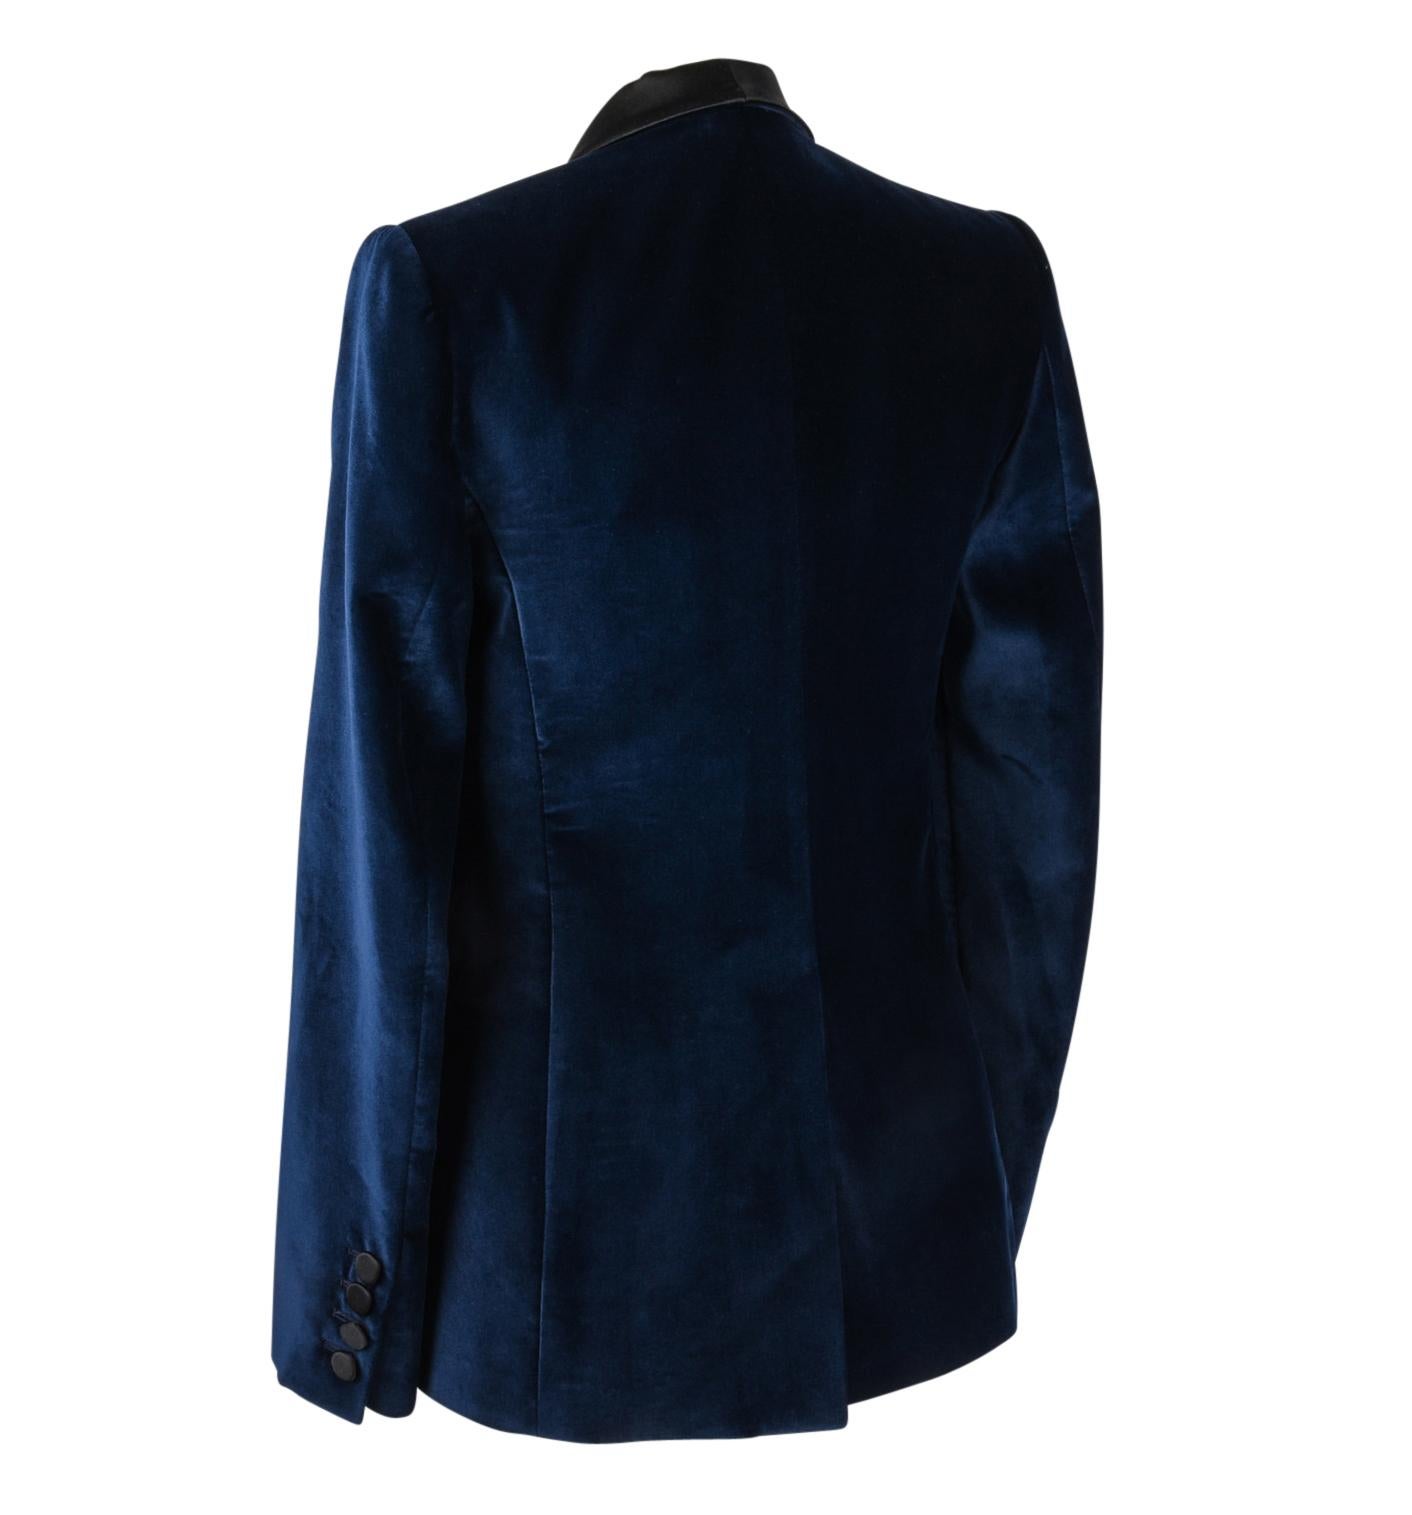 Stella McCartney Jacket Tuxedo Style Navy Velvet Black Trim 38 / 6 3